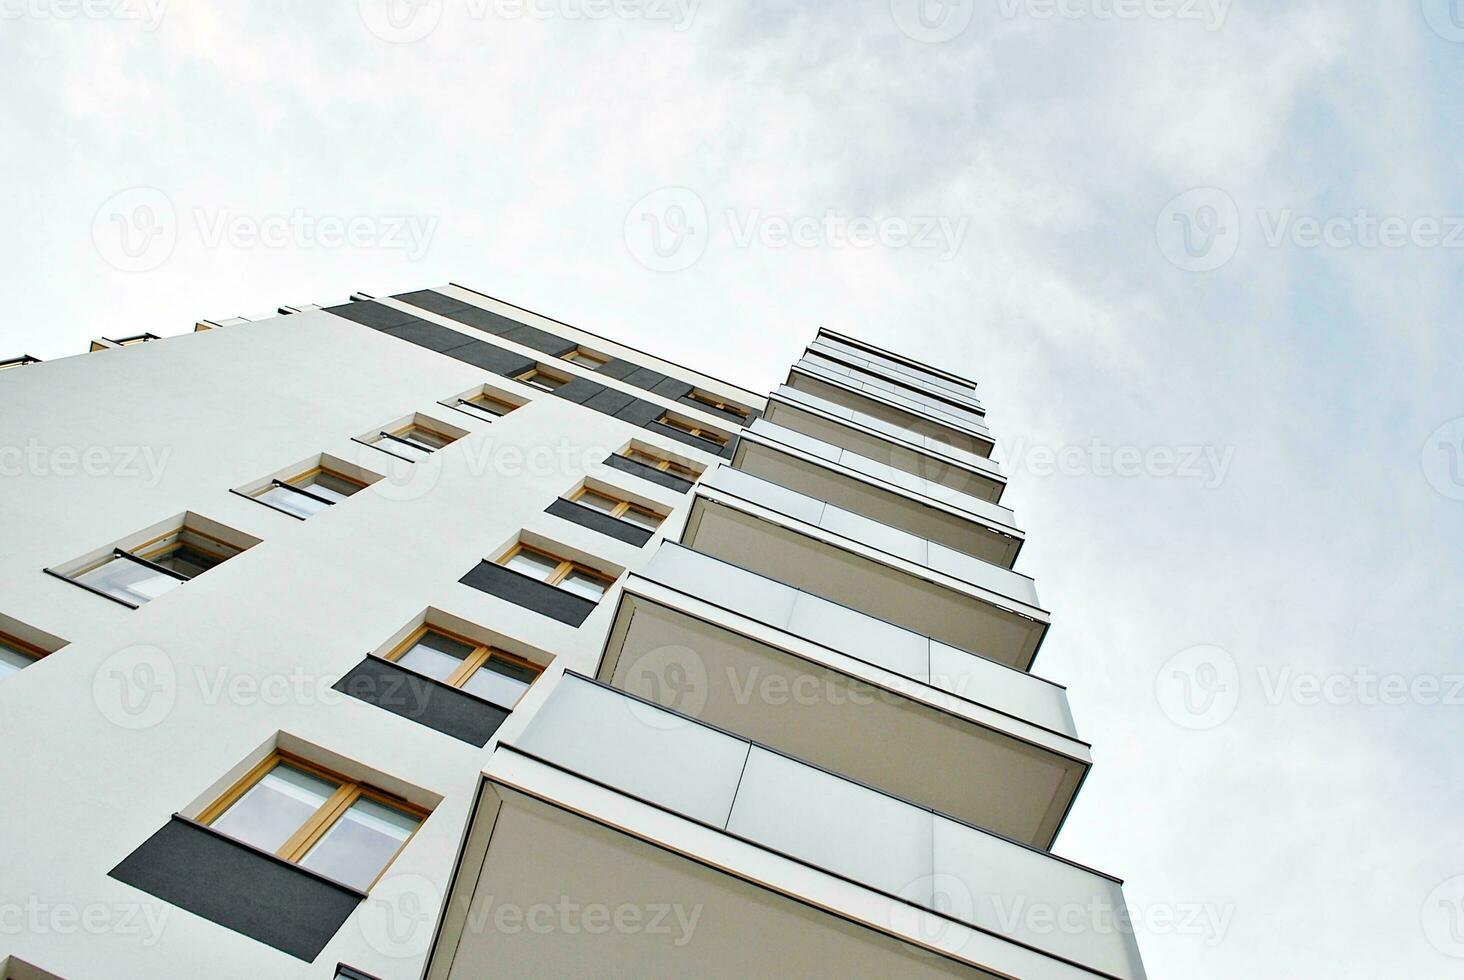 nuevo edificio de apartamentos con balcones de cristal. casas de arquitectura moderna junto al mar. Gran acristalamiento en la fachada del edificio. foto